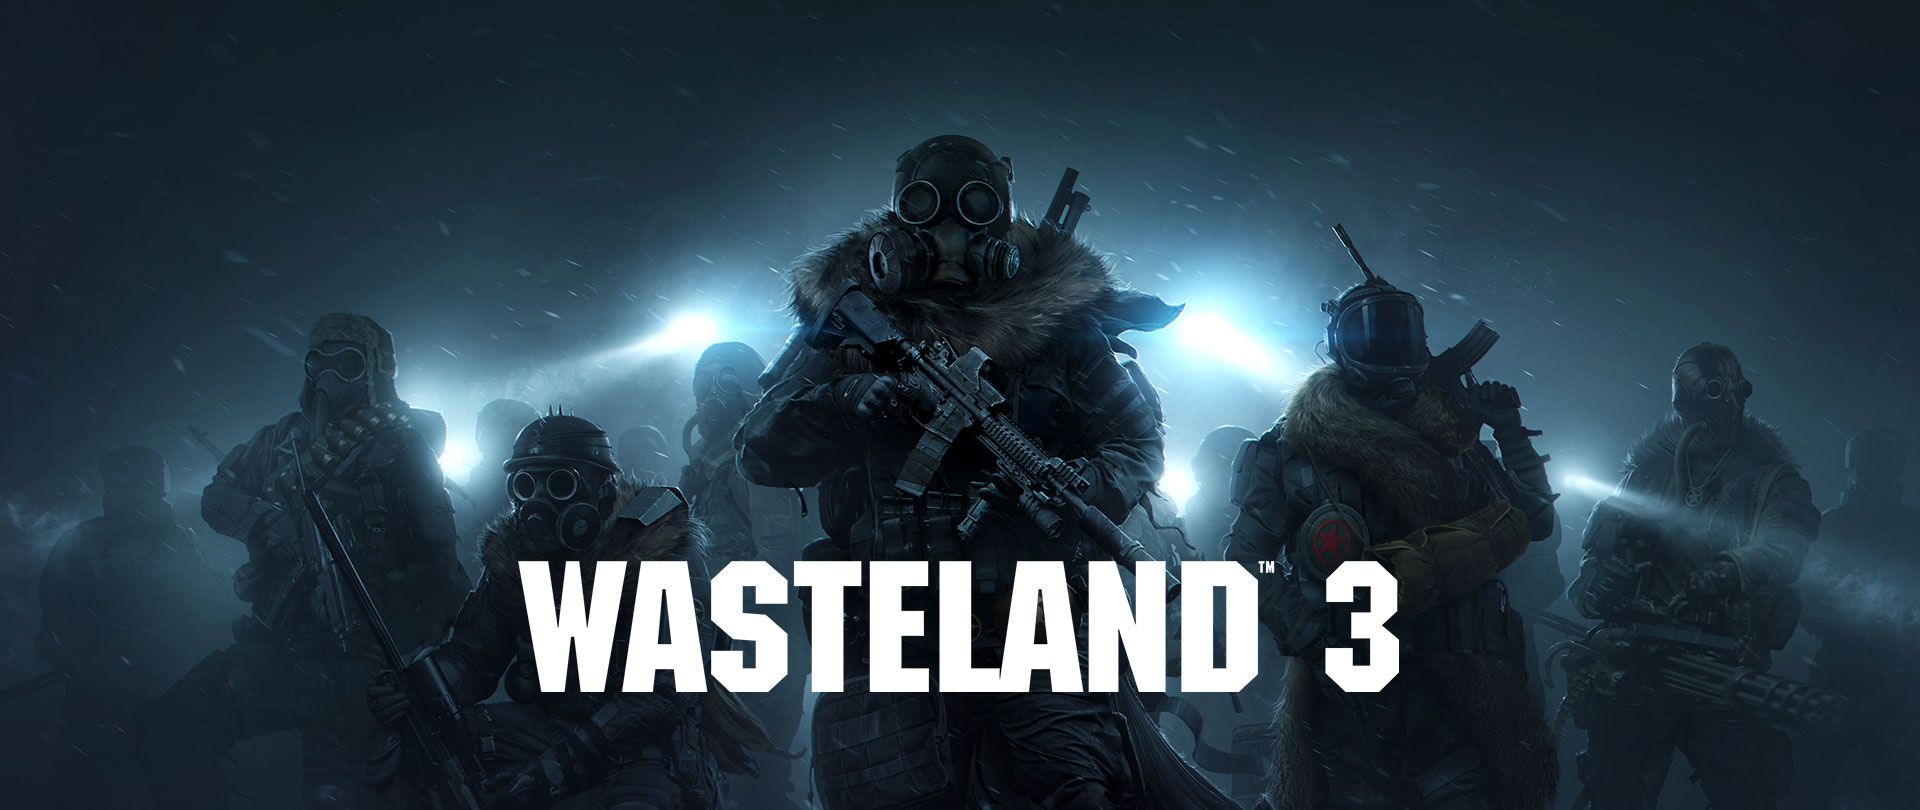 Wasteland 3 ist ab sofort verfügbar